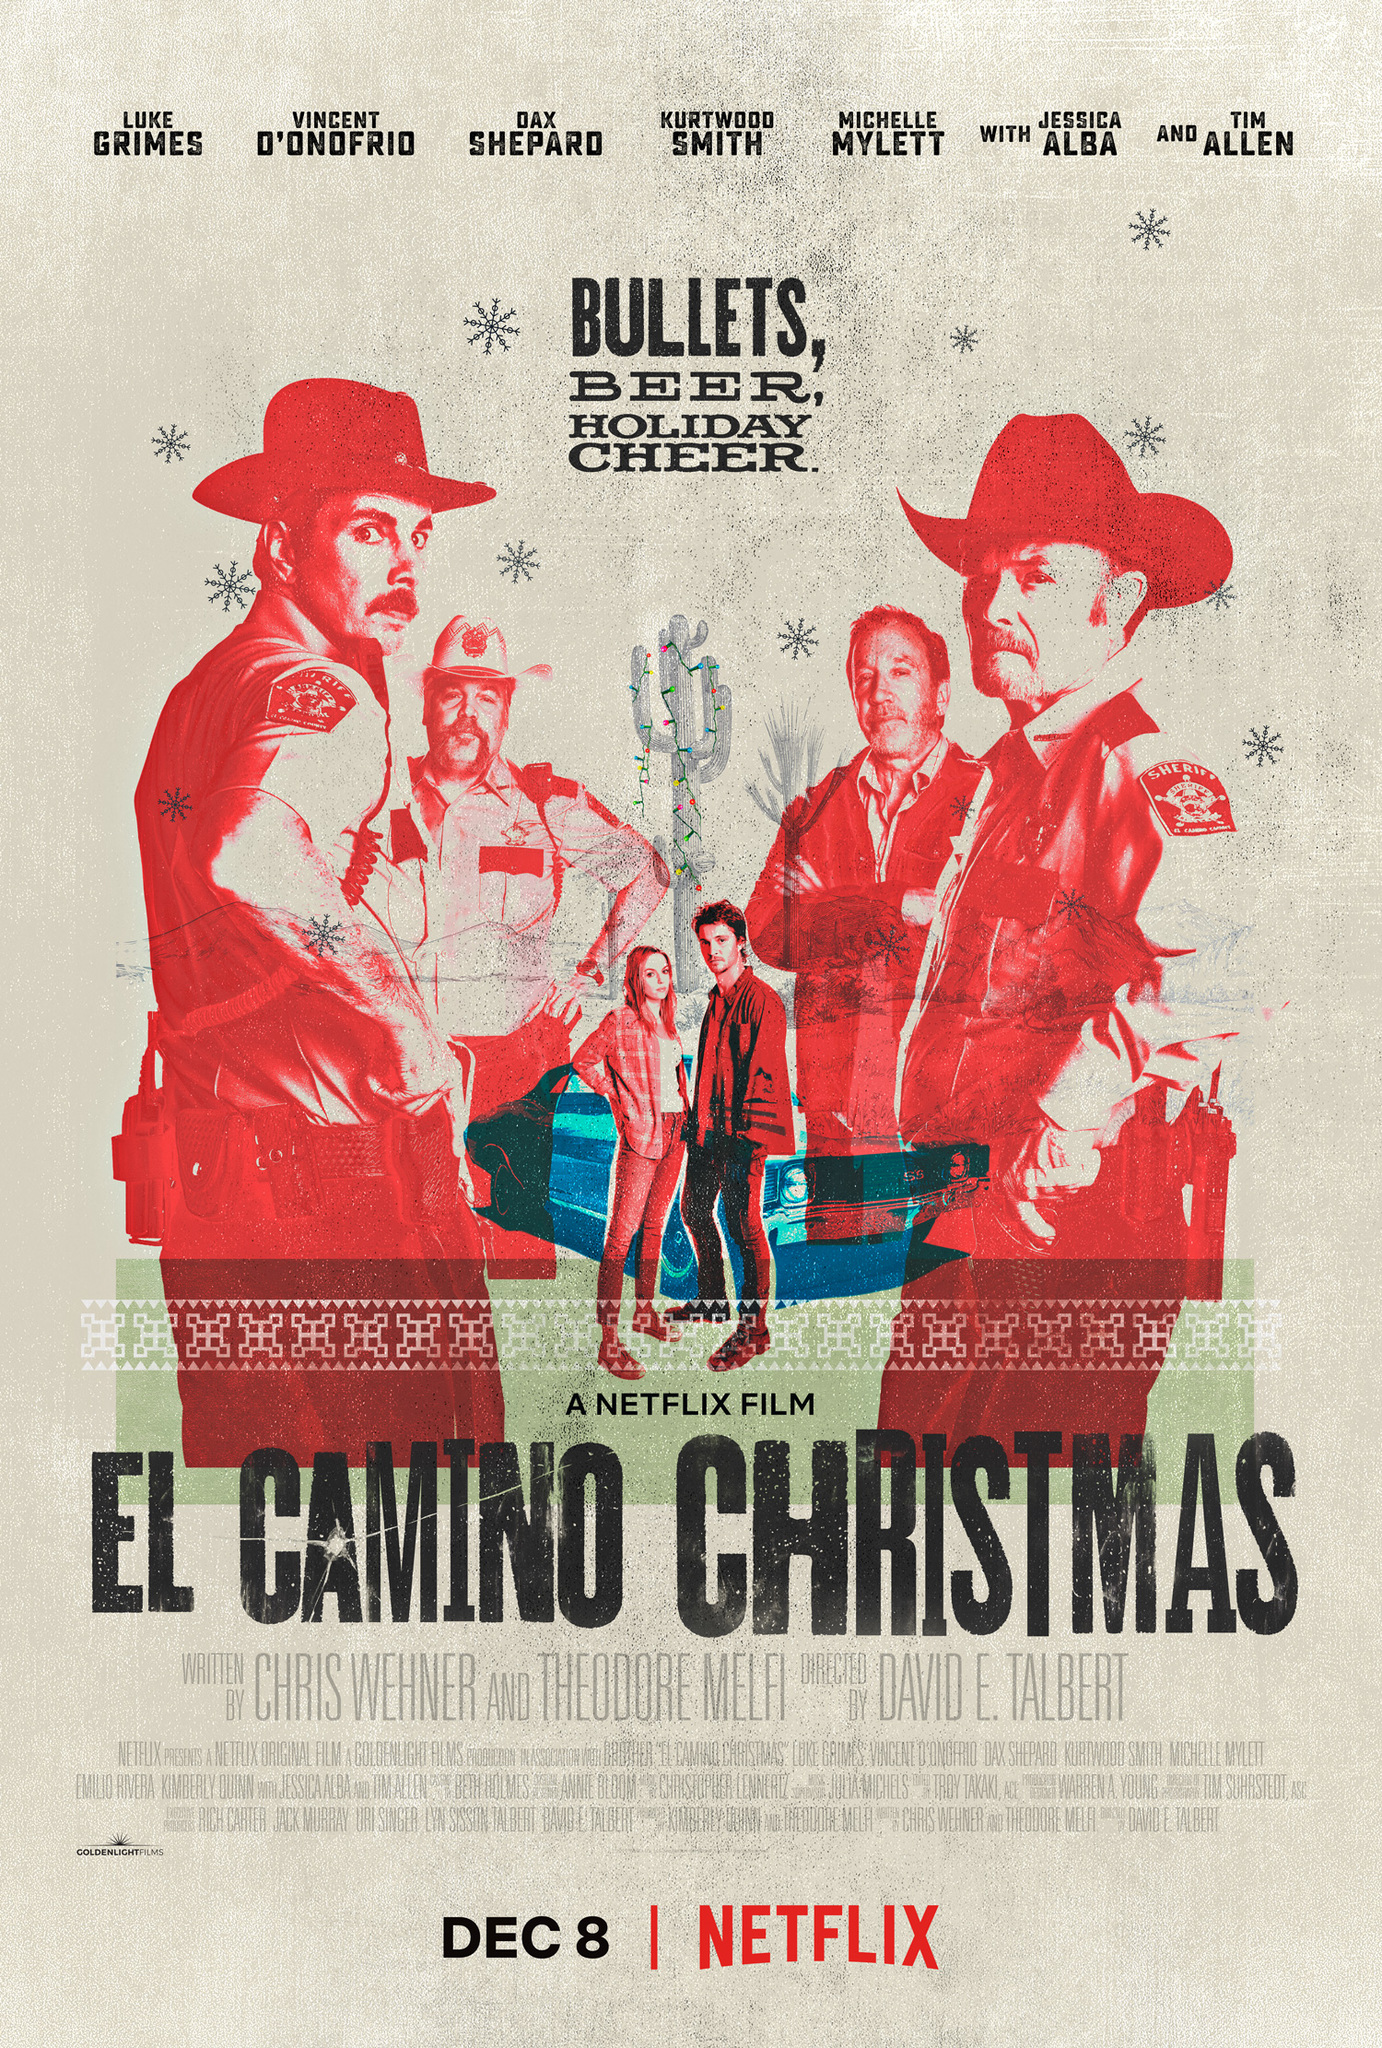 Nonton film El Camino Christmas layarkaca21 indoxx1 ganool online streaming terbaru